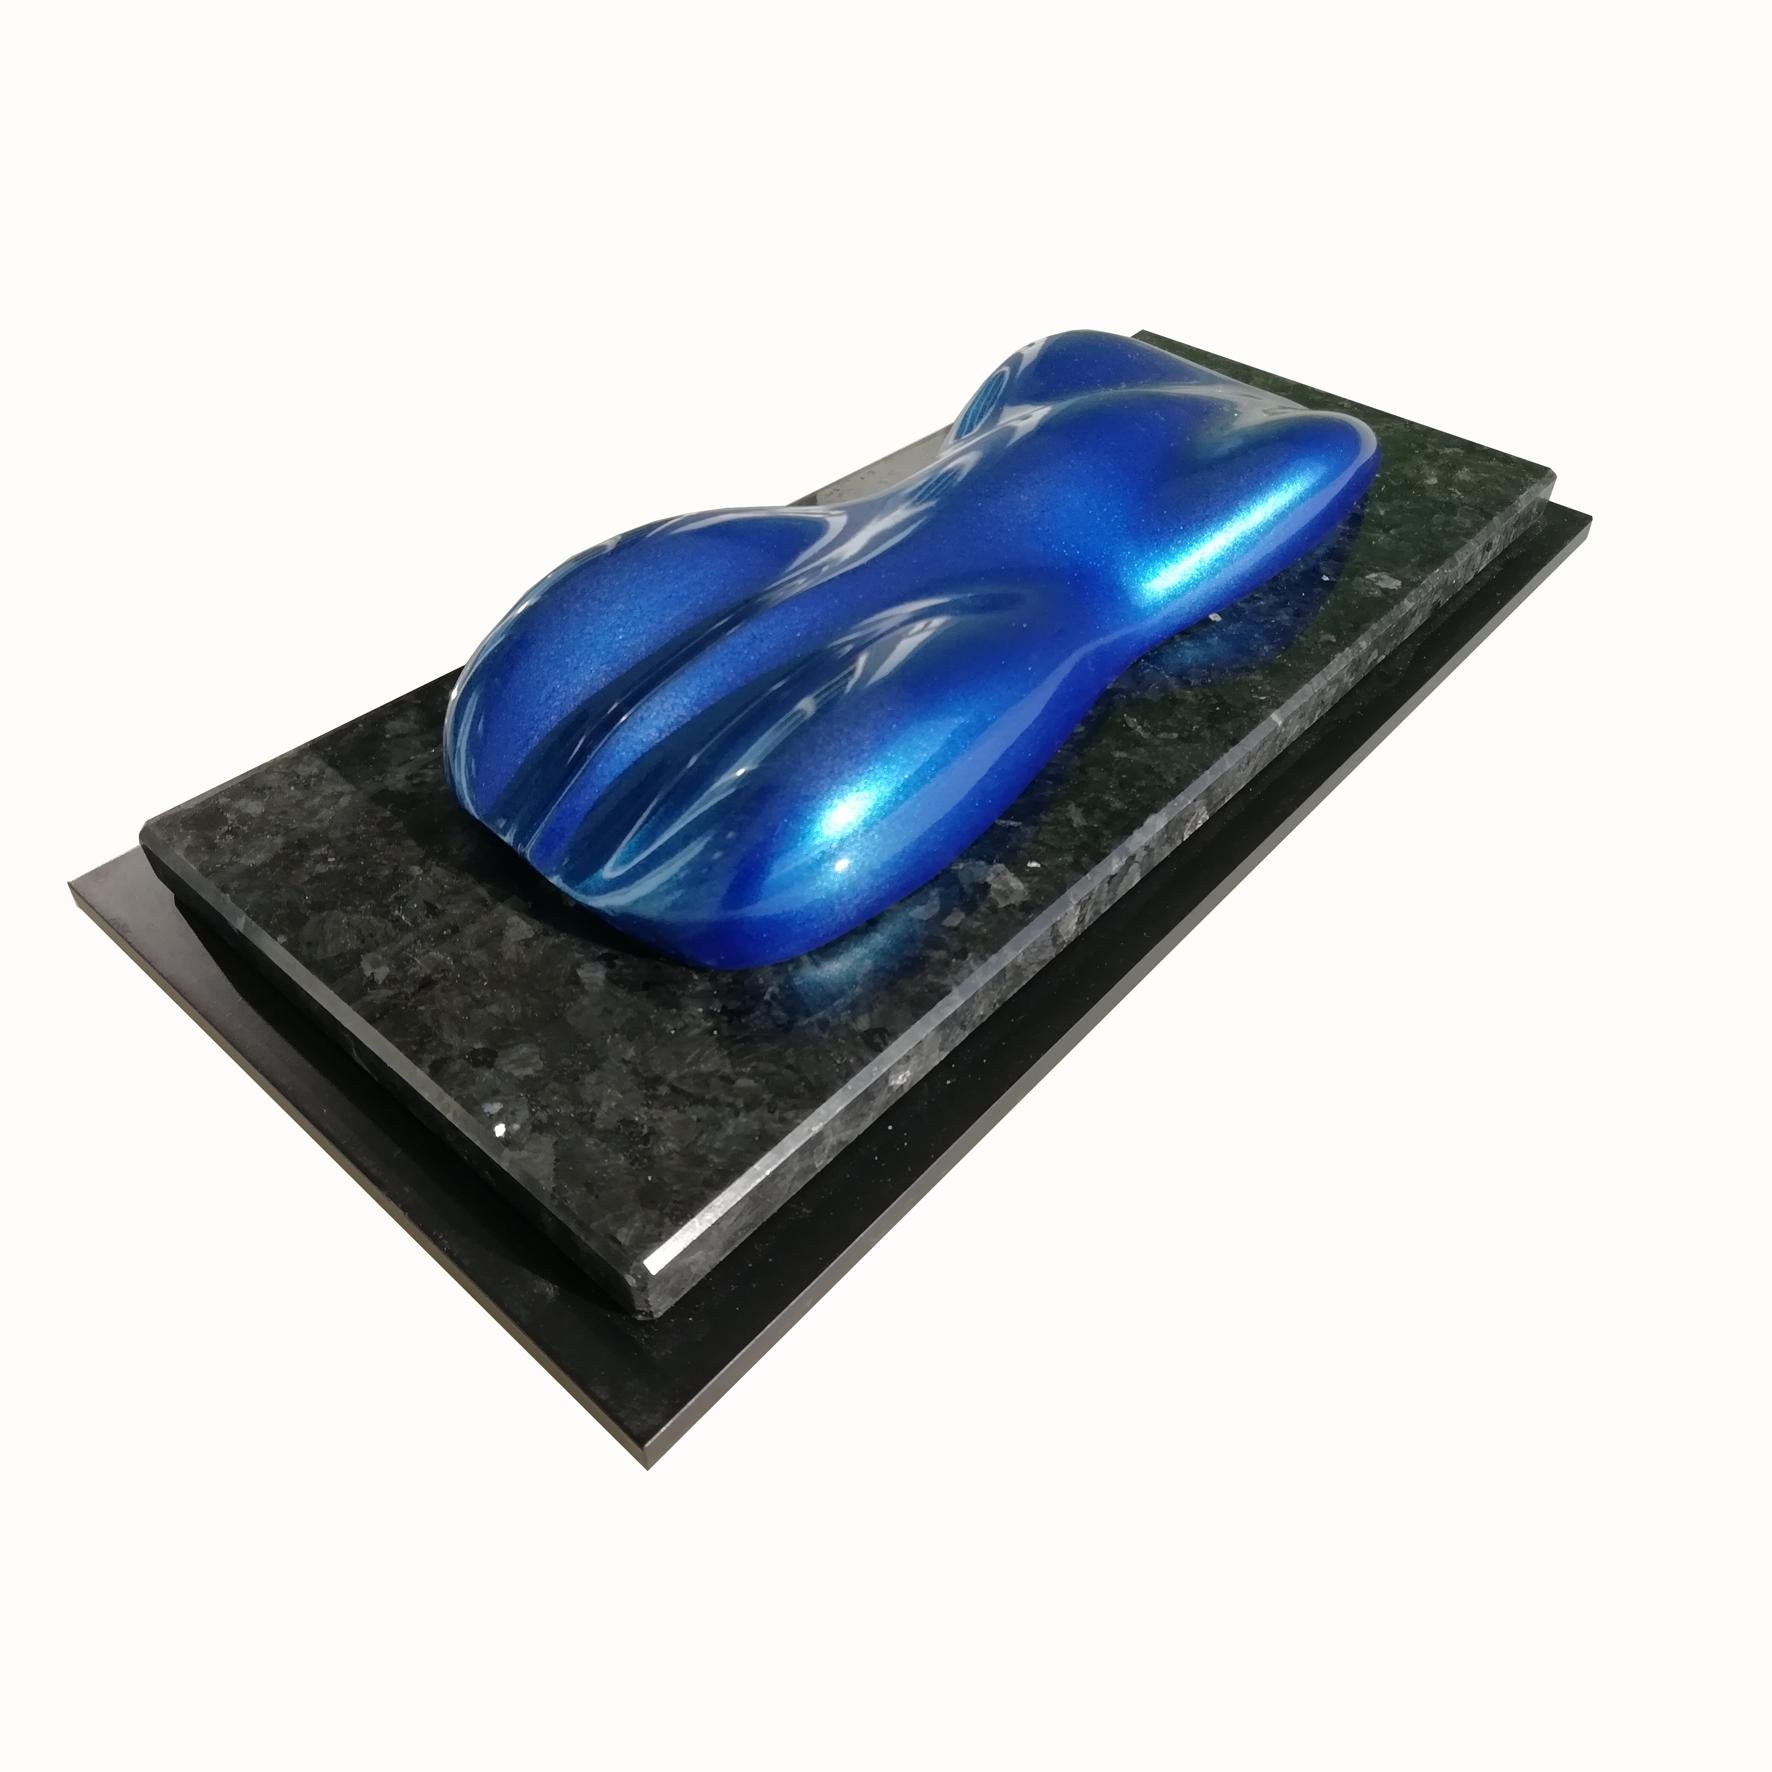 Lago bleu

Modèle en composite de marbre laqué et verni d'une voiture de course.
Sur une base rectangulaire en bois marbré et laqué.

Belzoni trouve son inspiration dans les voitures de course légendaires des années 1950 et 1960.
Ses sculptures